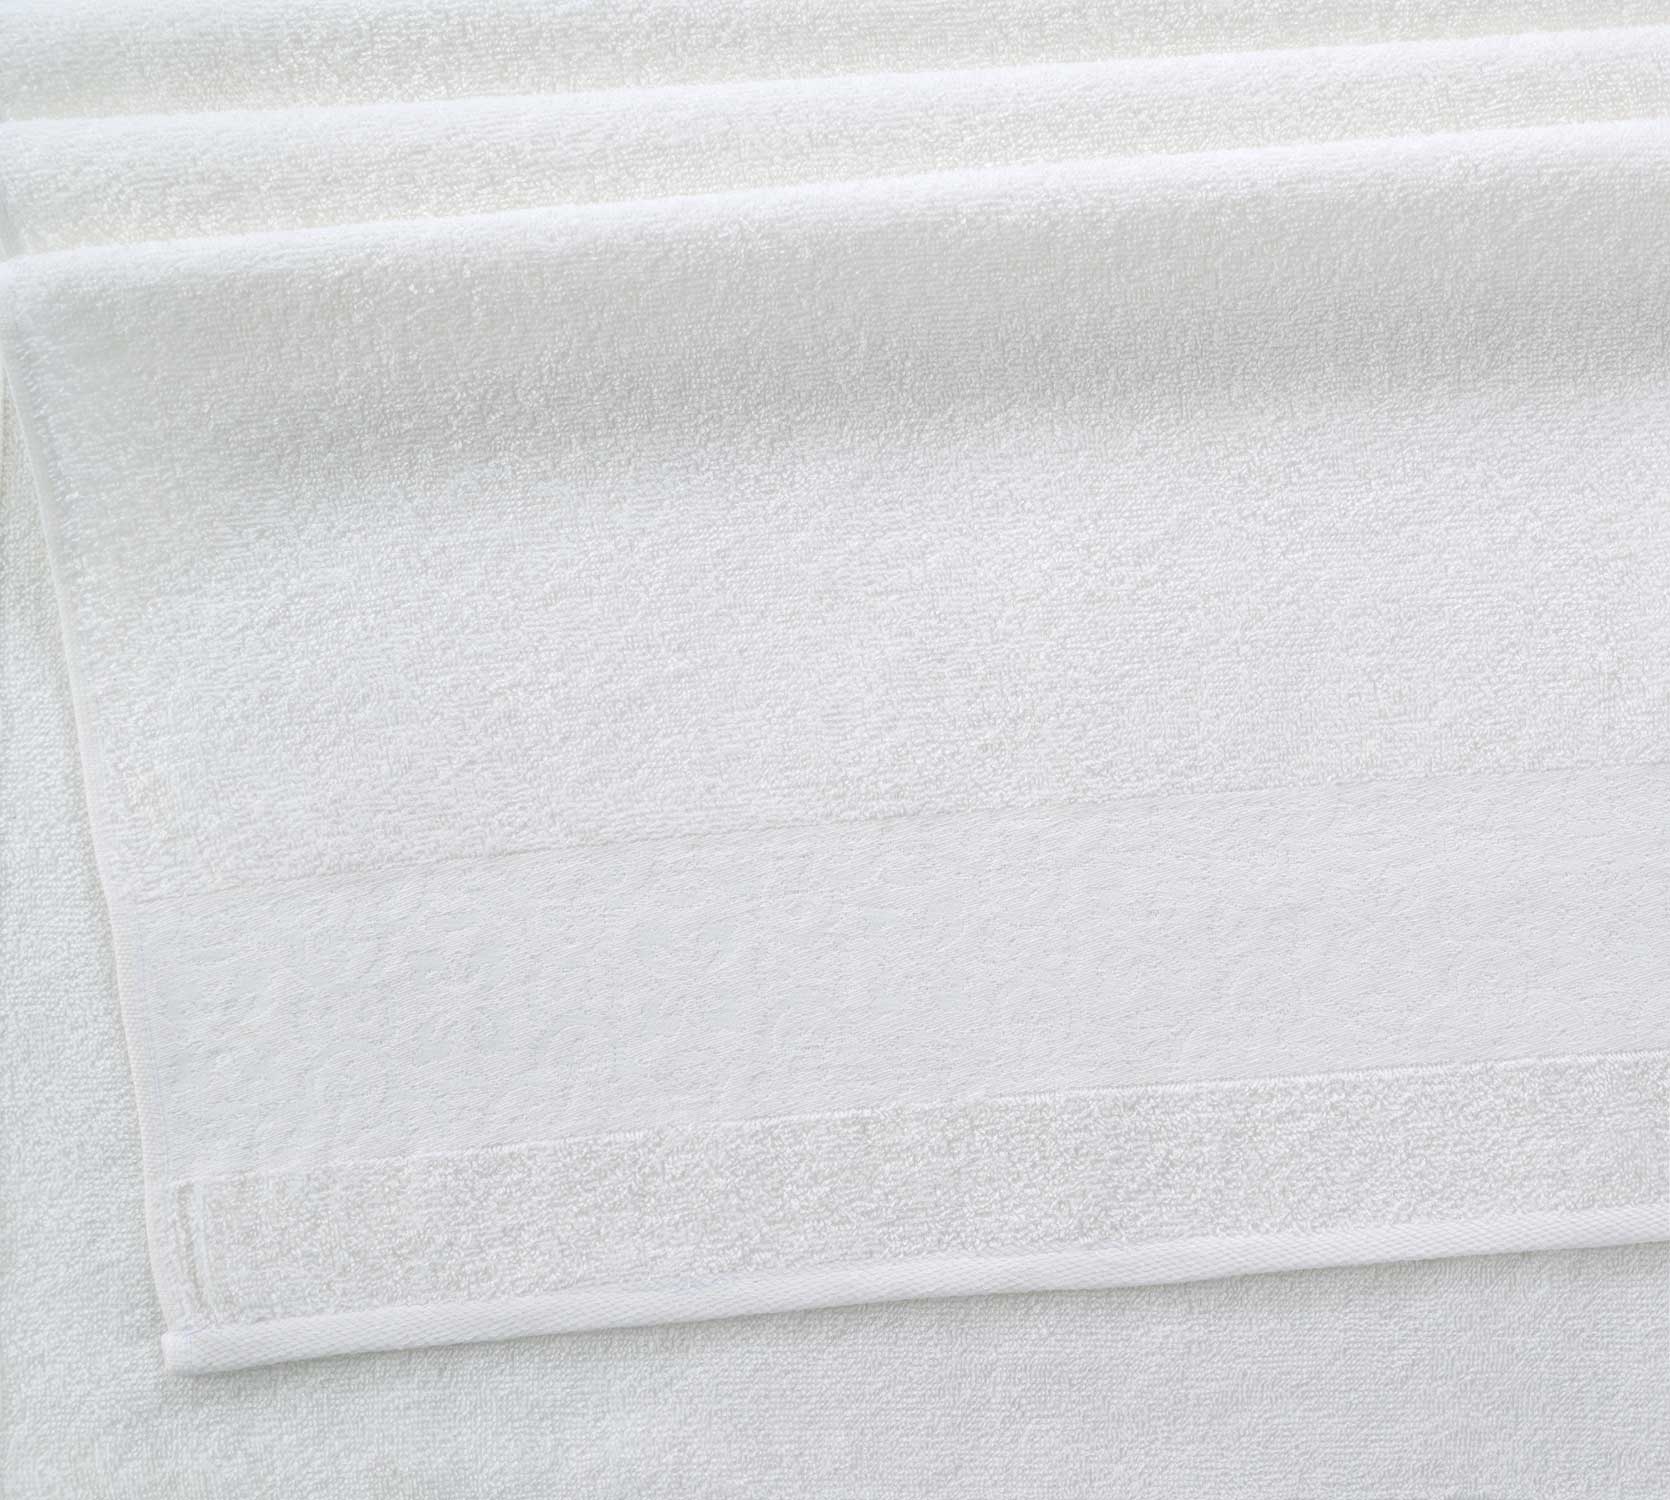 Постельное белье Полотенце махровое для рук и лица 50x80, Мозаика крем фото